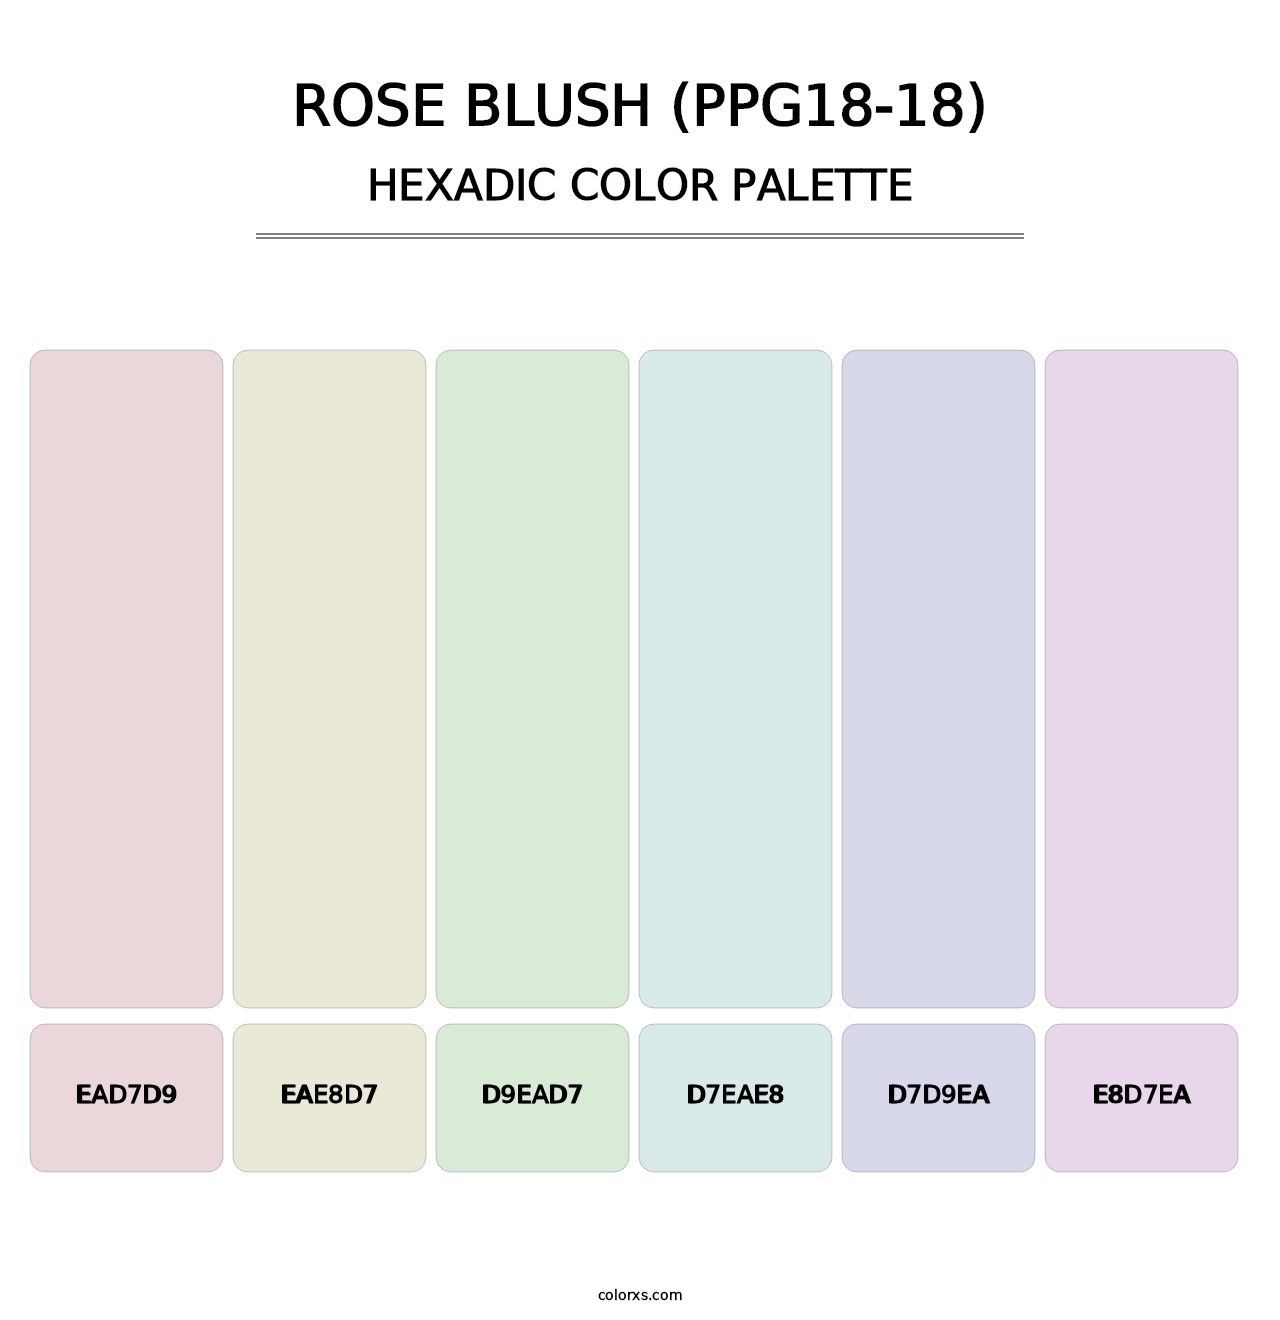 Rose Blush (PPG18-18) - Hexadic Color Palette